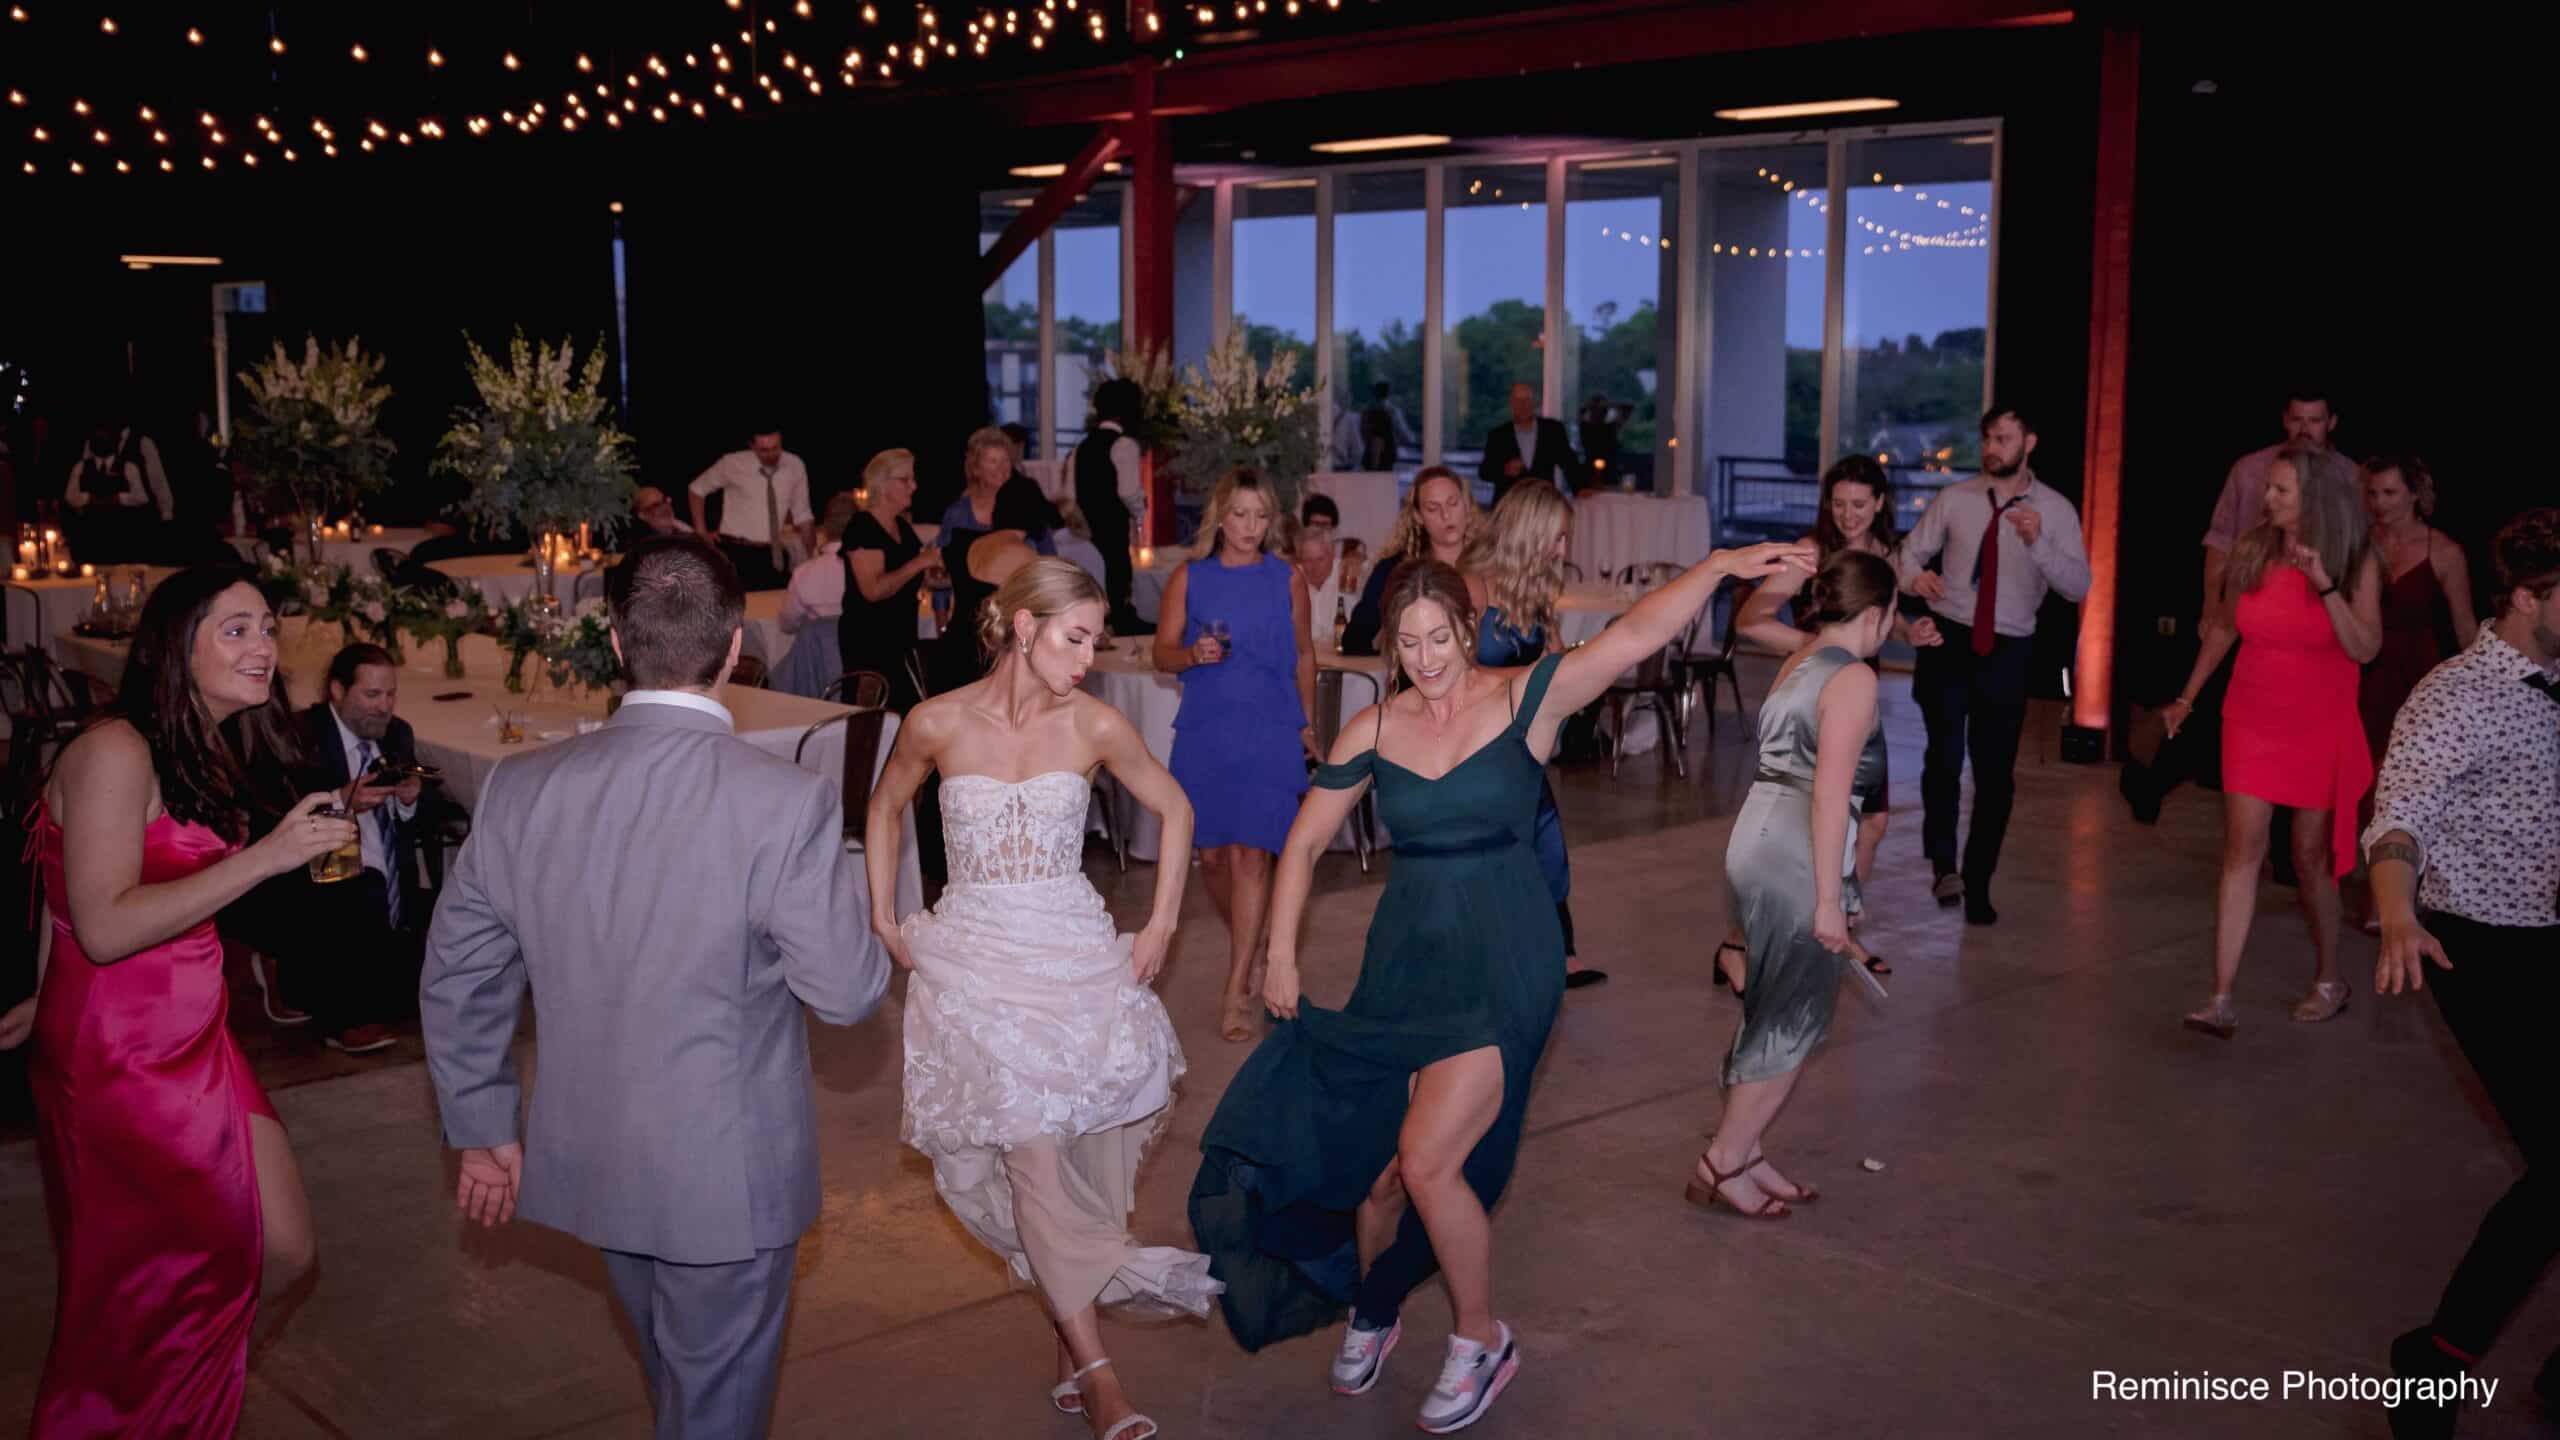 Large Wisconsin wedding venue with fun dance floor